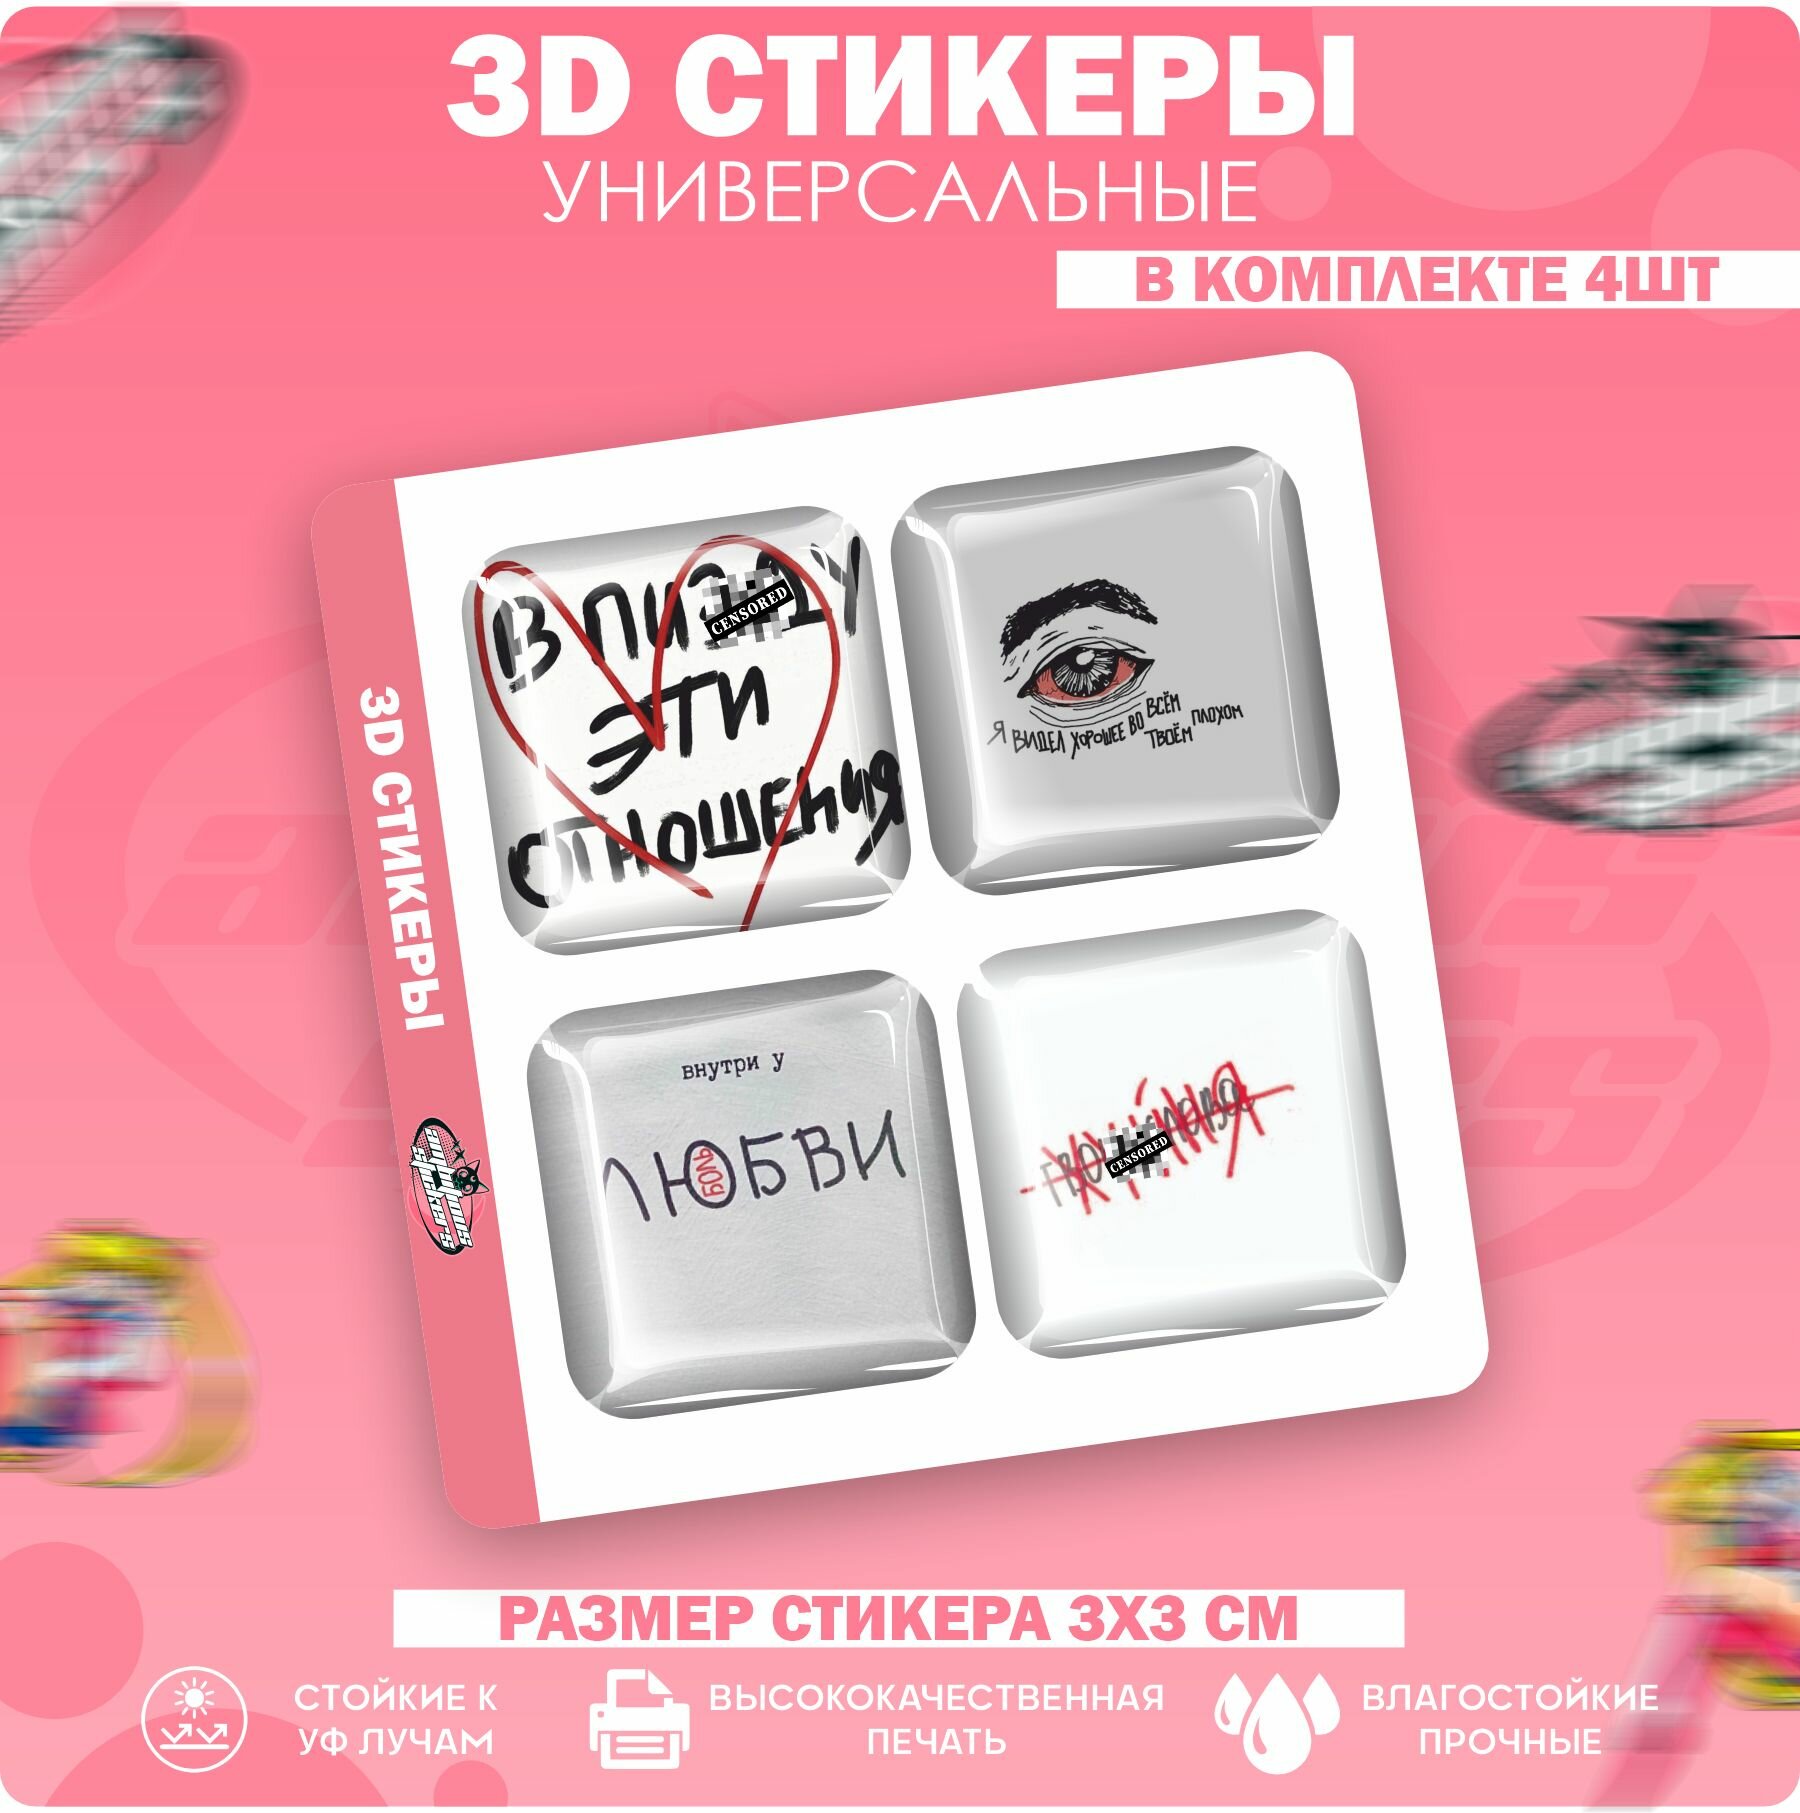 3D стикеры наклейки на телефон любовь, отношения